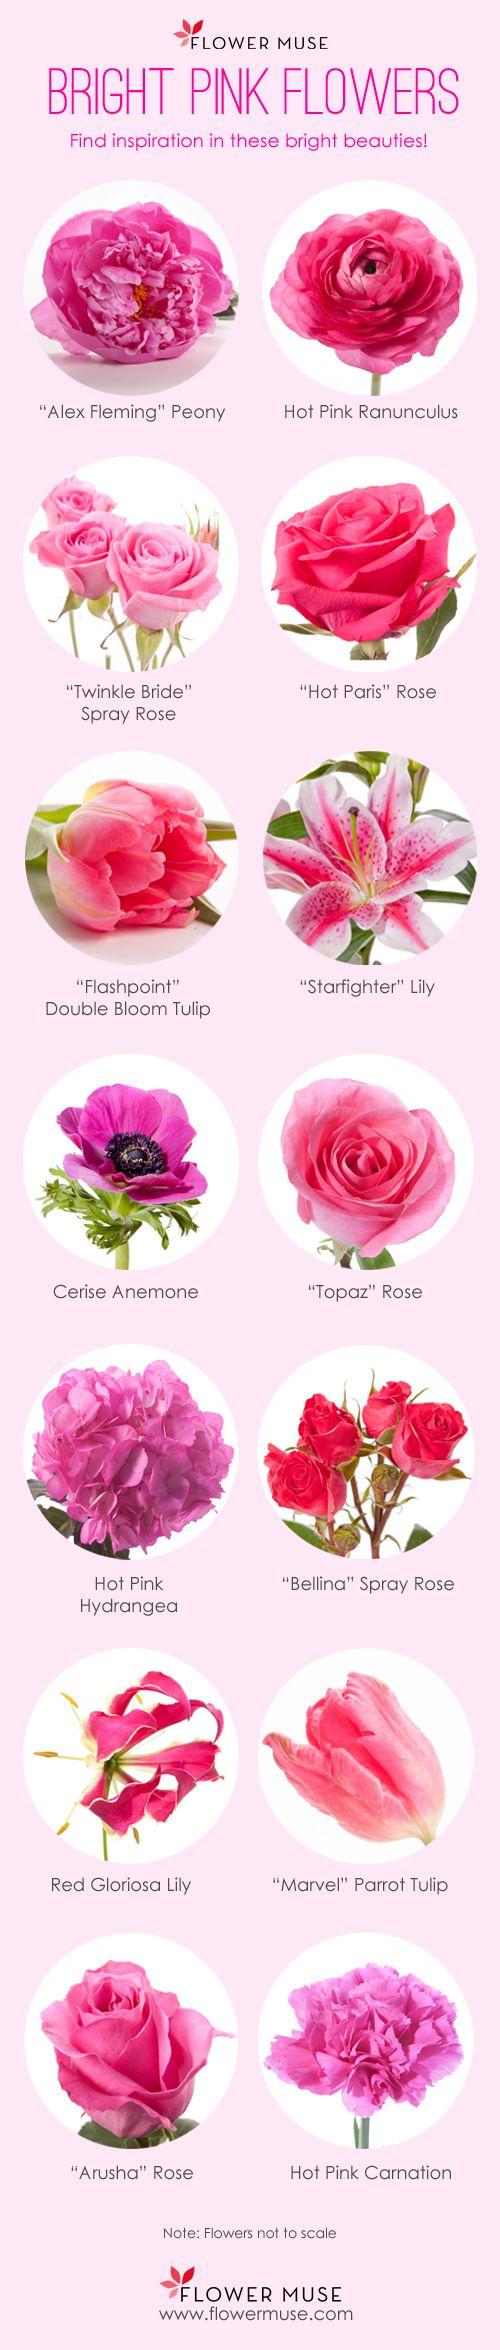 Hochzeit - Our Favorite: Bright Pink Flowers - Flower Muse Blog